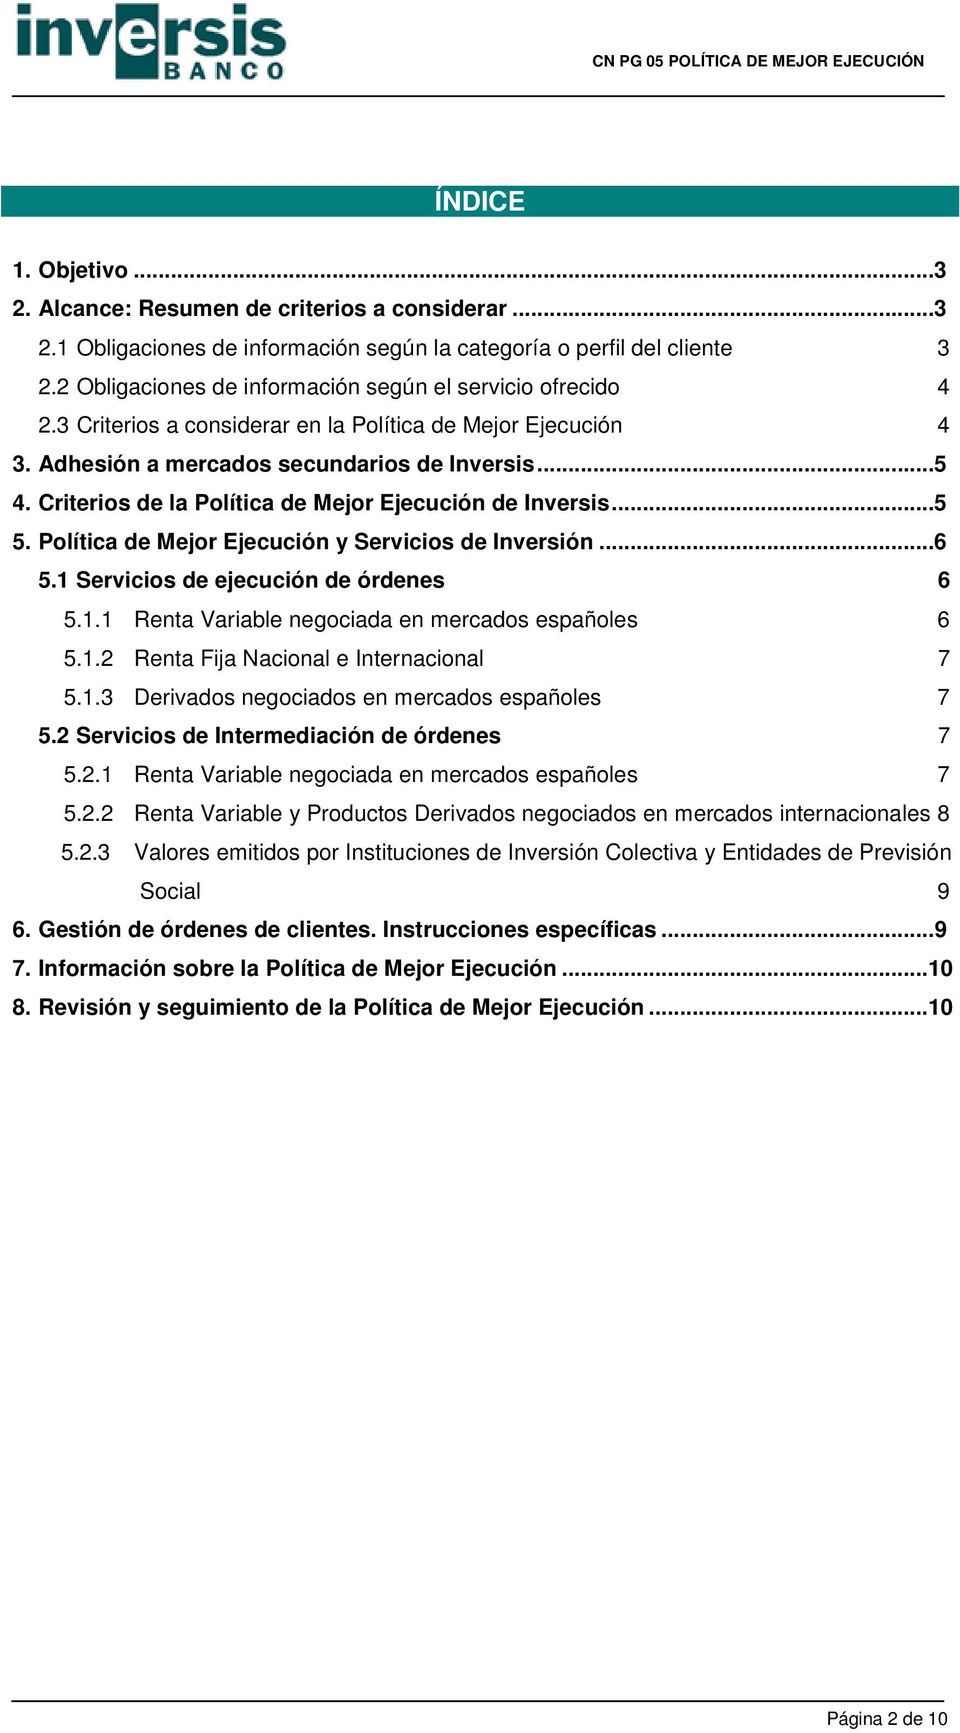 Criterios de la Política de Mejor Ejecución de Inversis...5 5. Política de Mejor Ejecución y Servicios de Inversión...6 5.1 Servicios de ejecución de órdenes 6 5.1.1 Renta Variable negociada en mercados españoles 6 5.